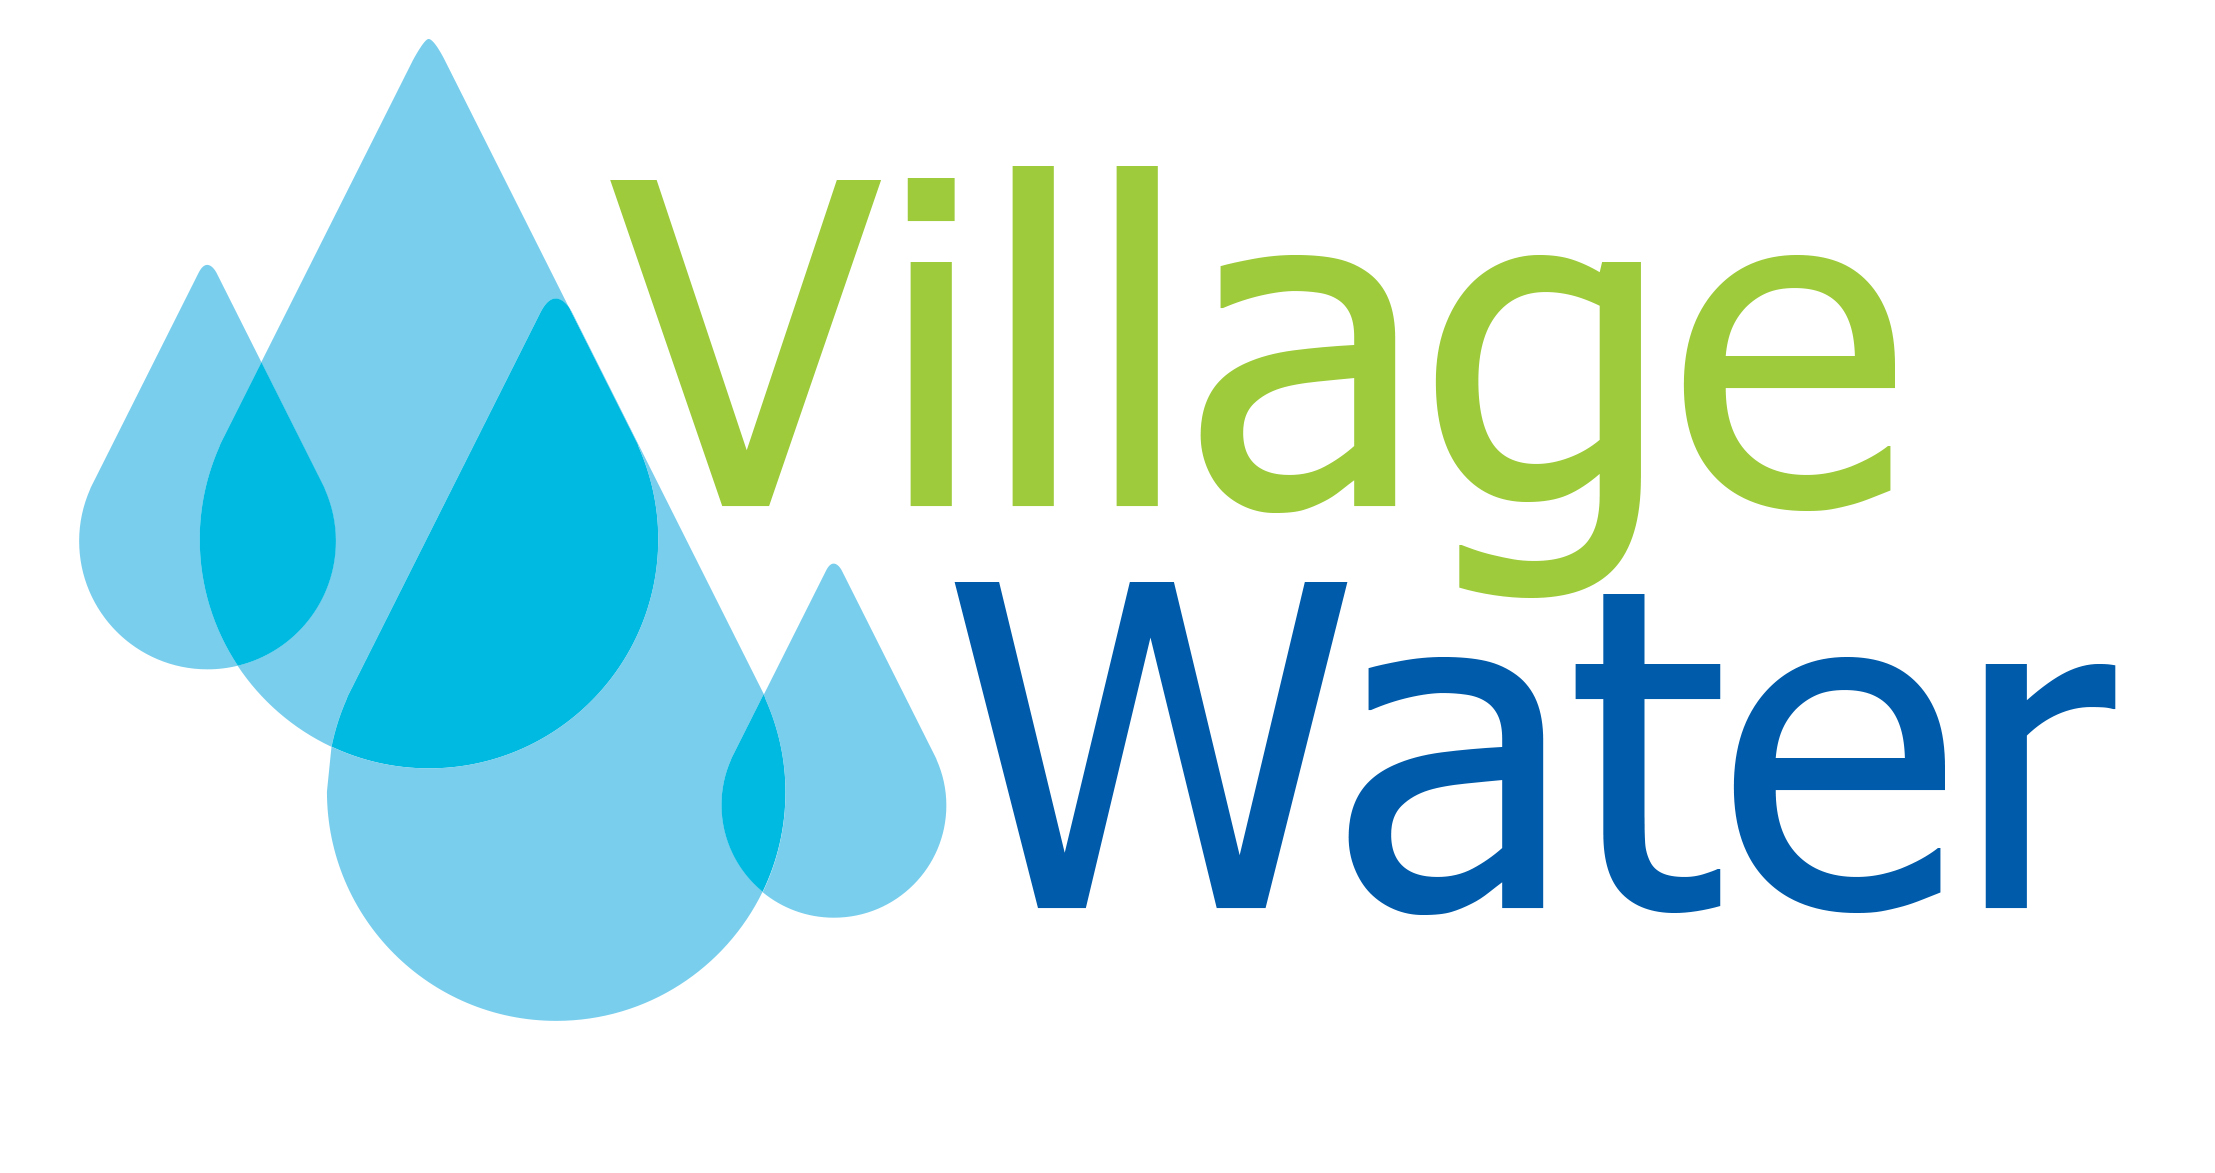 Village Water